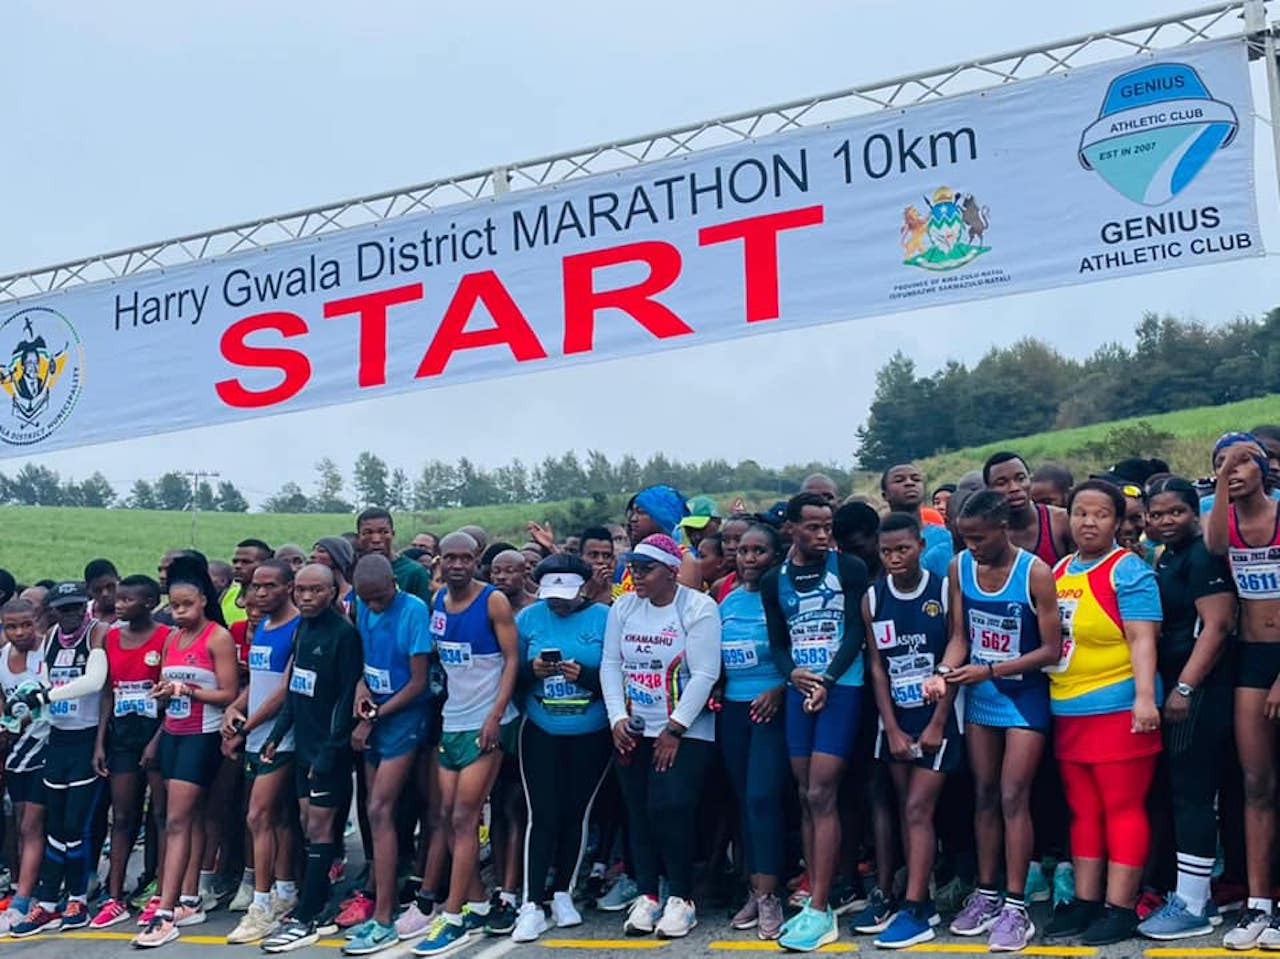 Harry Gwala District Marathon | Running Races in Ixopo | Racepass